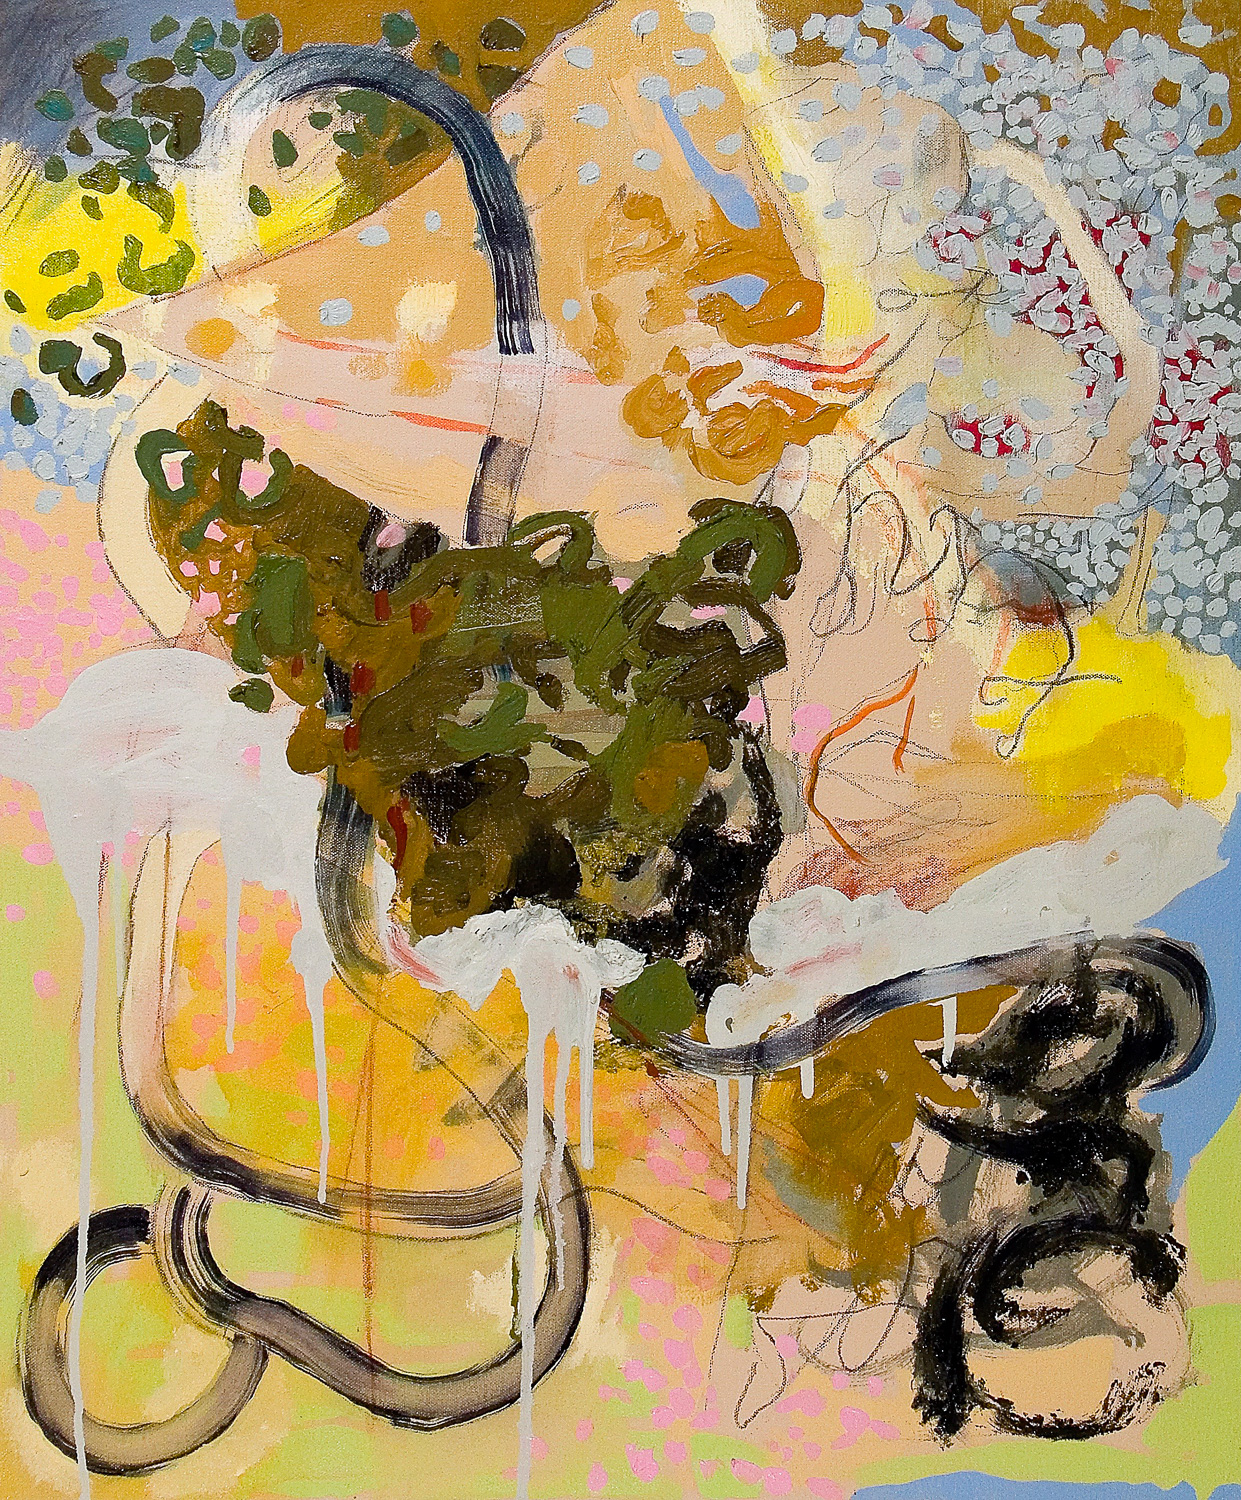   Untitled (Laocoön Series)&nbsp; , 2010 Oil on canvas 24 x 20" 